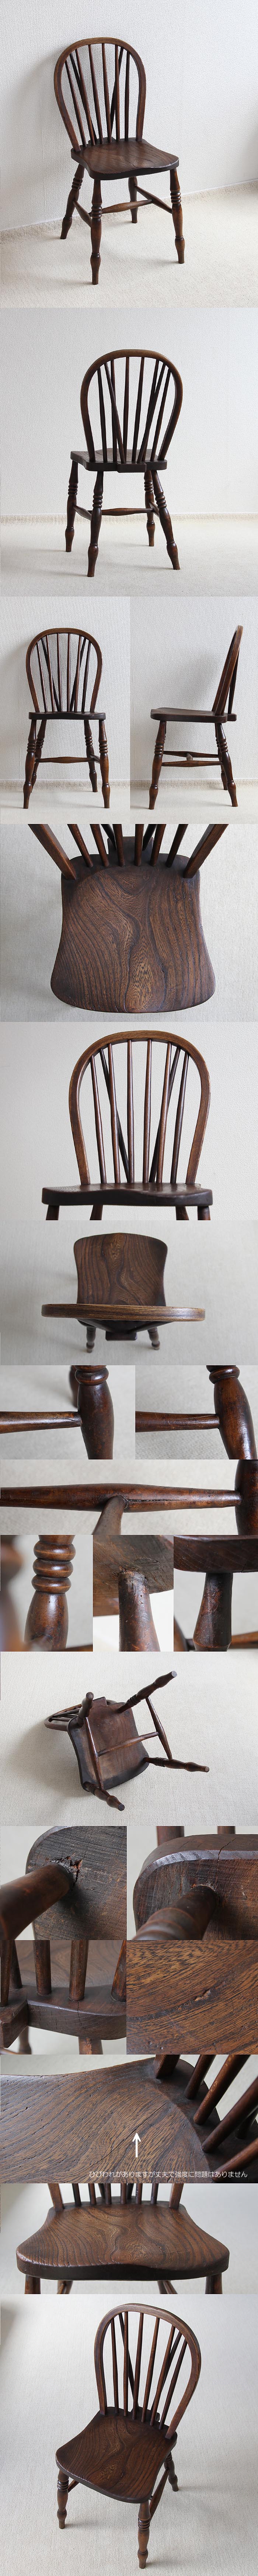 イギリス アンティーク ウィンザーチェア 英国 木製椅子 古木 家具「キッチンチェア」V-577